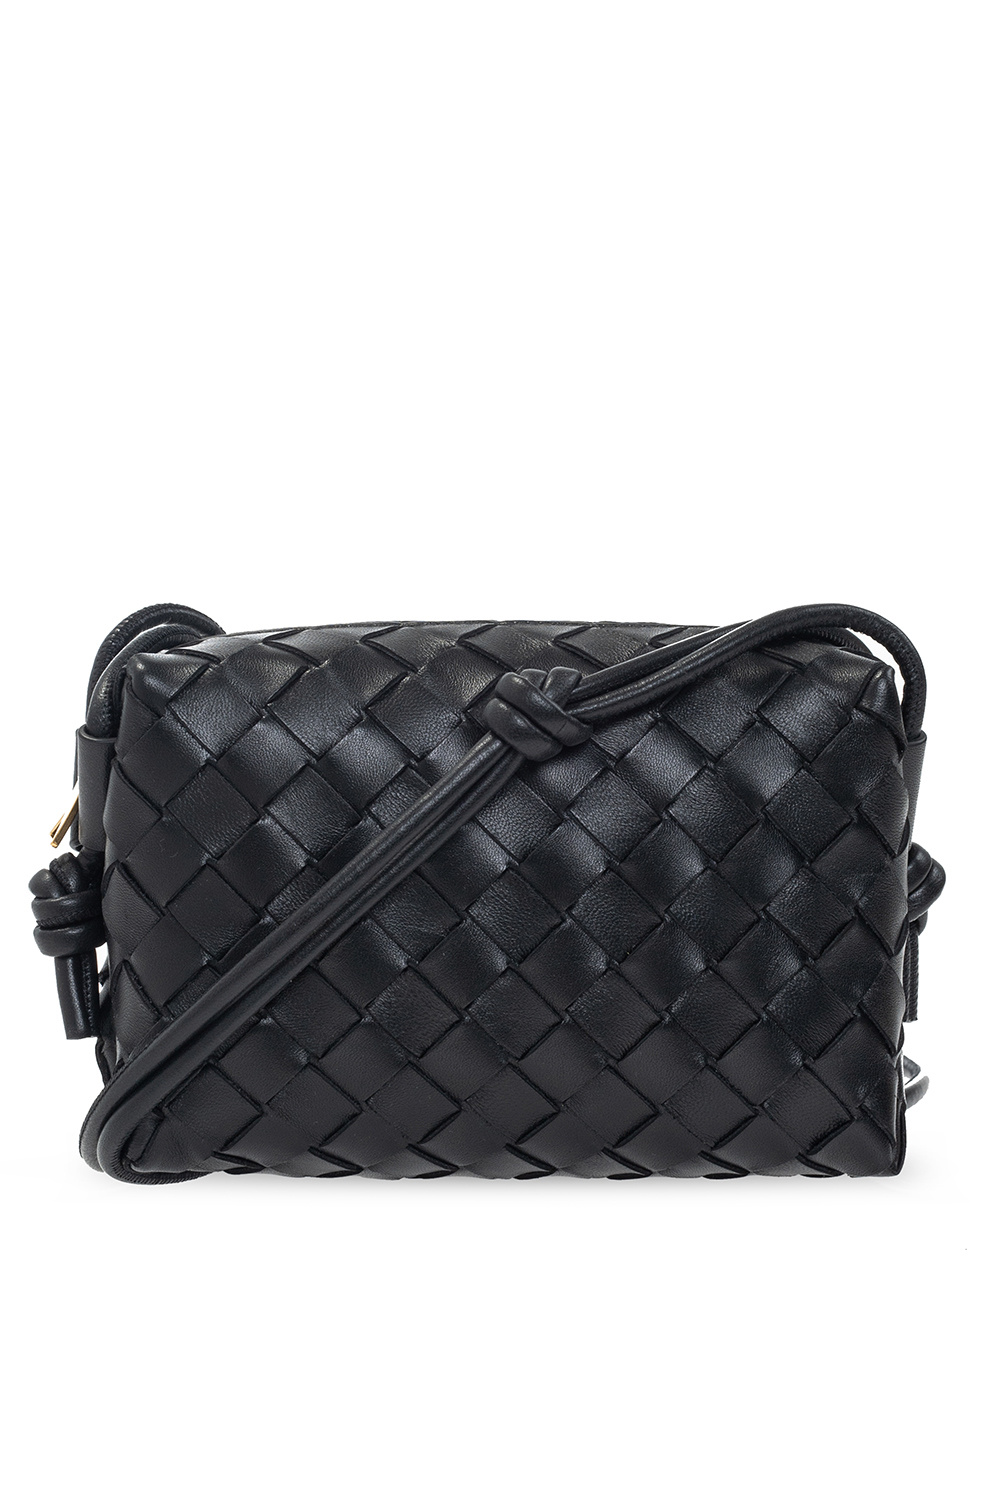 Bottega Veneta ‘Loop Bag’ shoulder bag